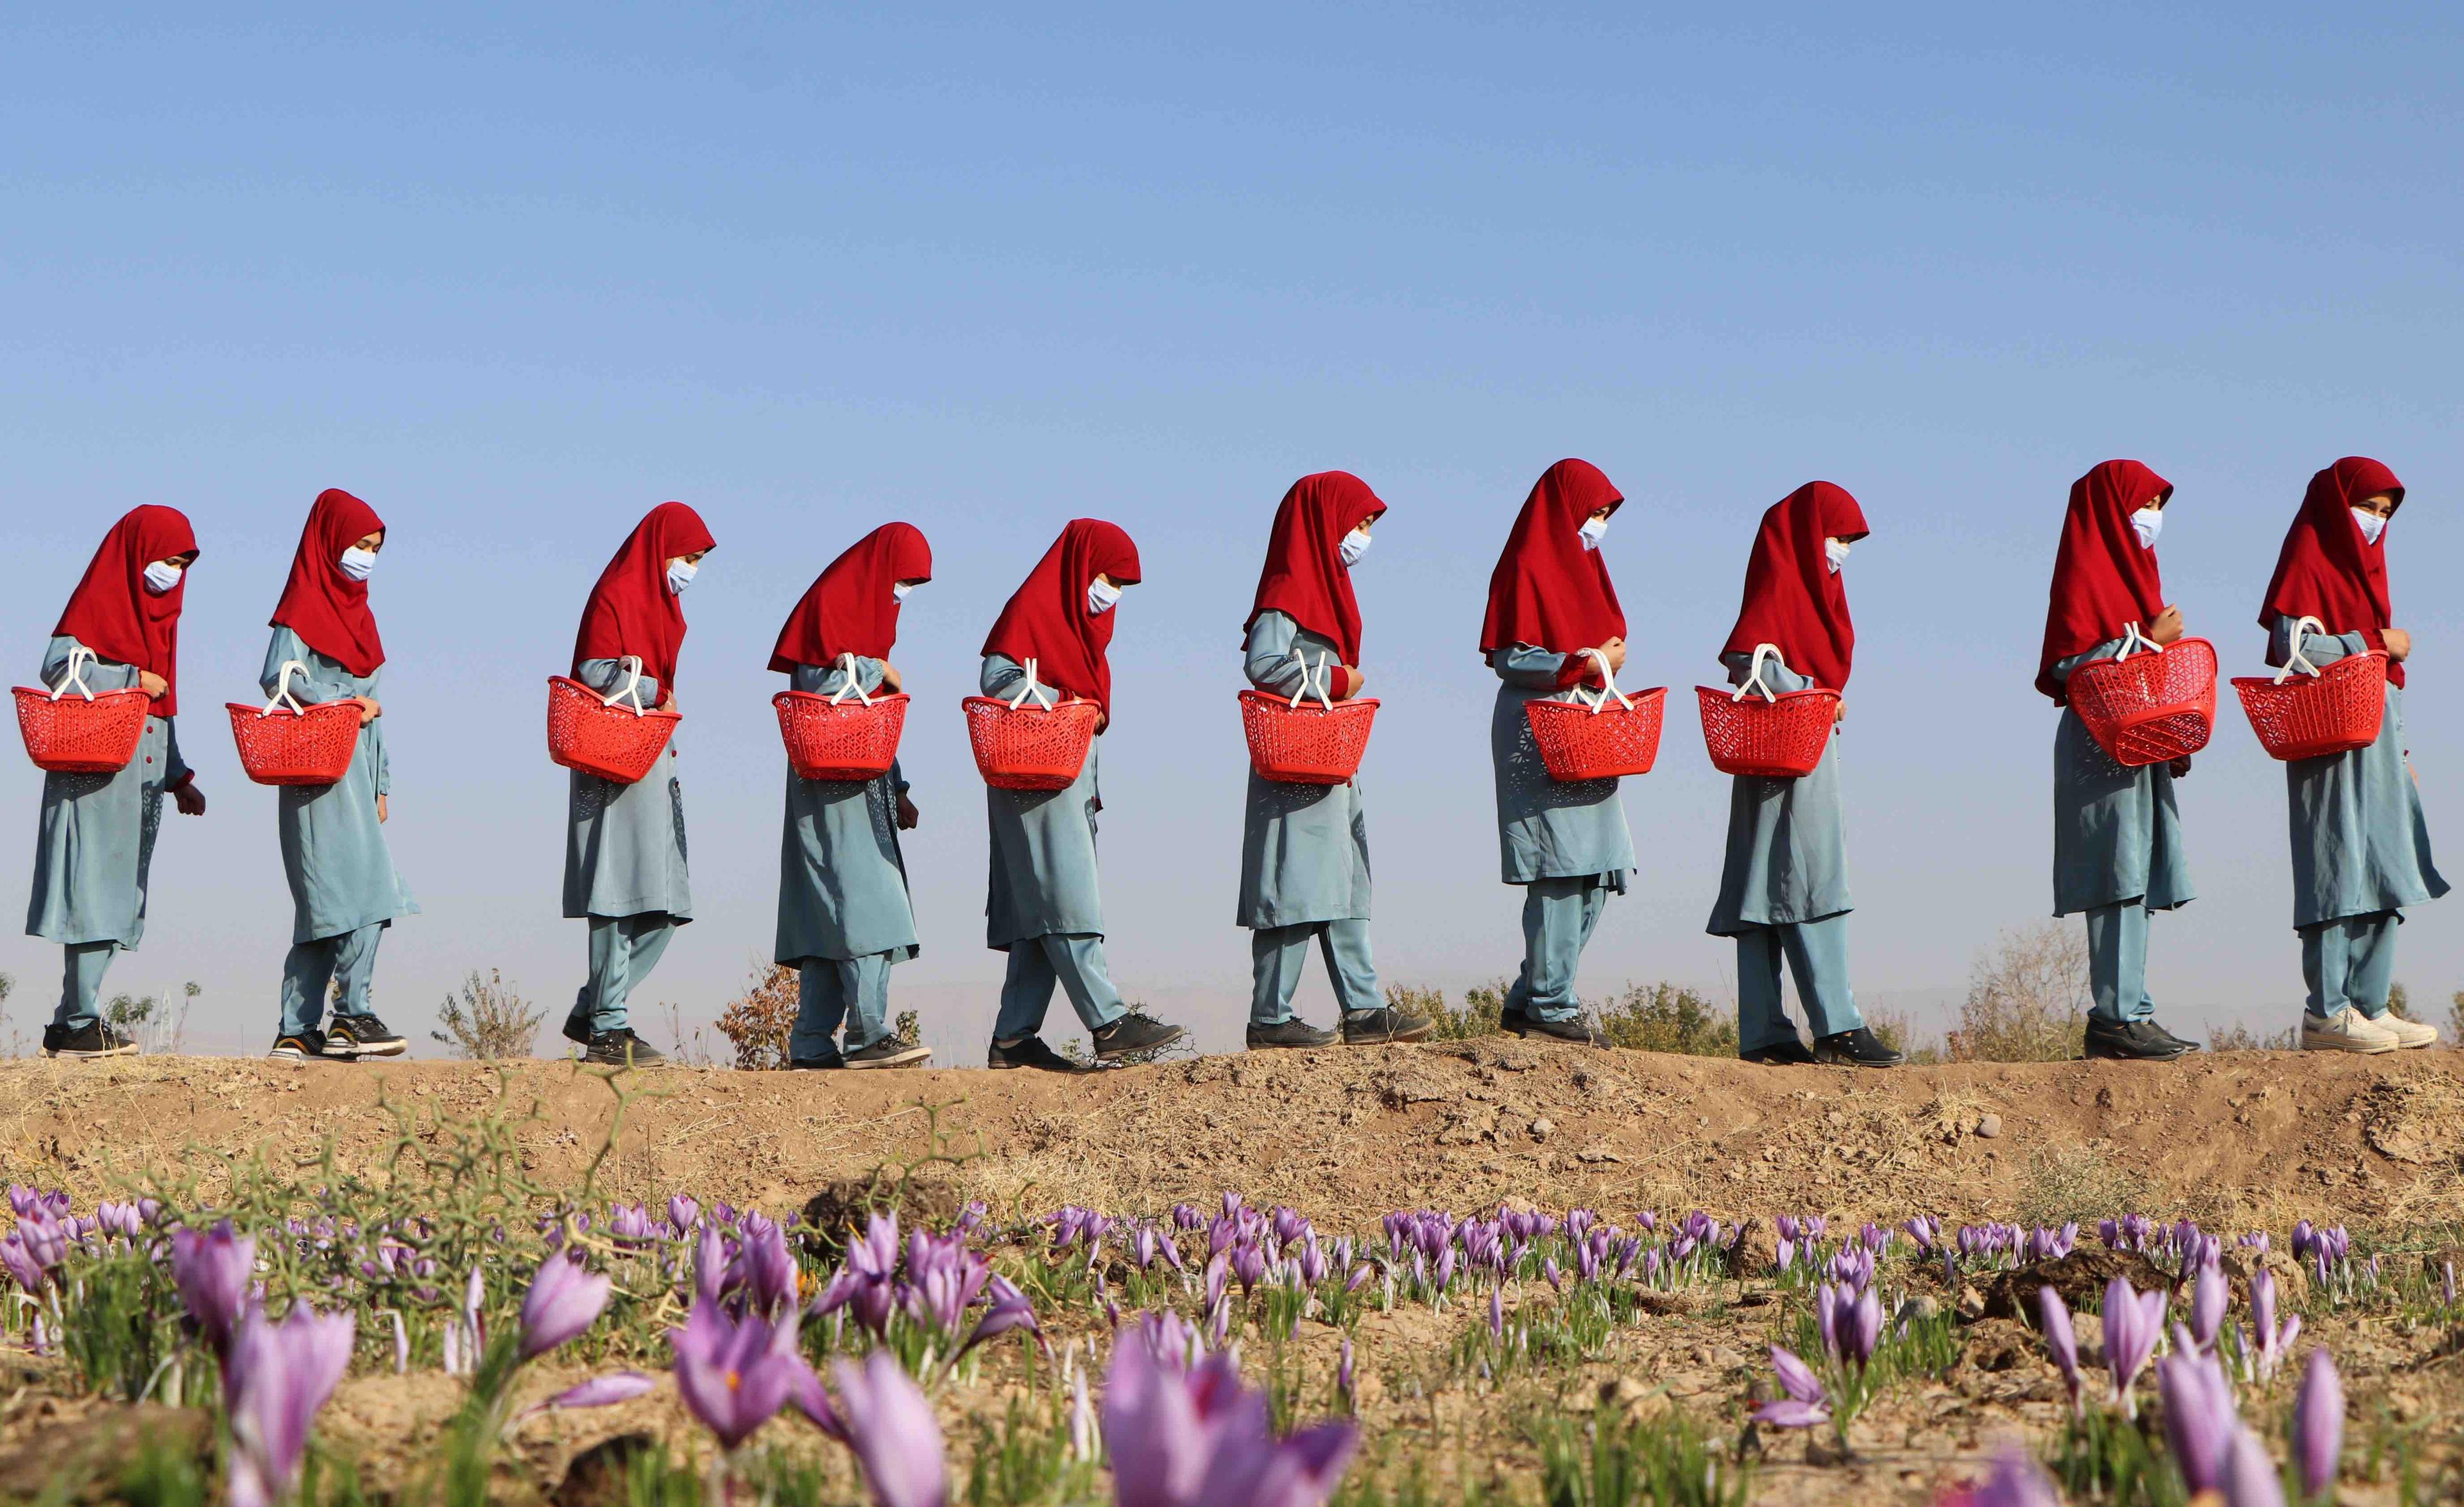 Afganki w czerwonych hidżabach idą gęsiego prez pole, niosąc kosze z kwiatami szafranu.